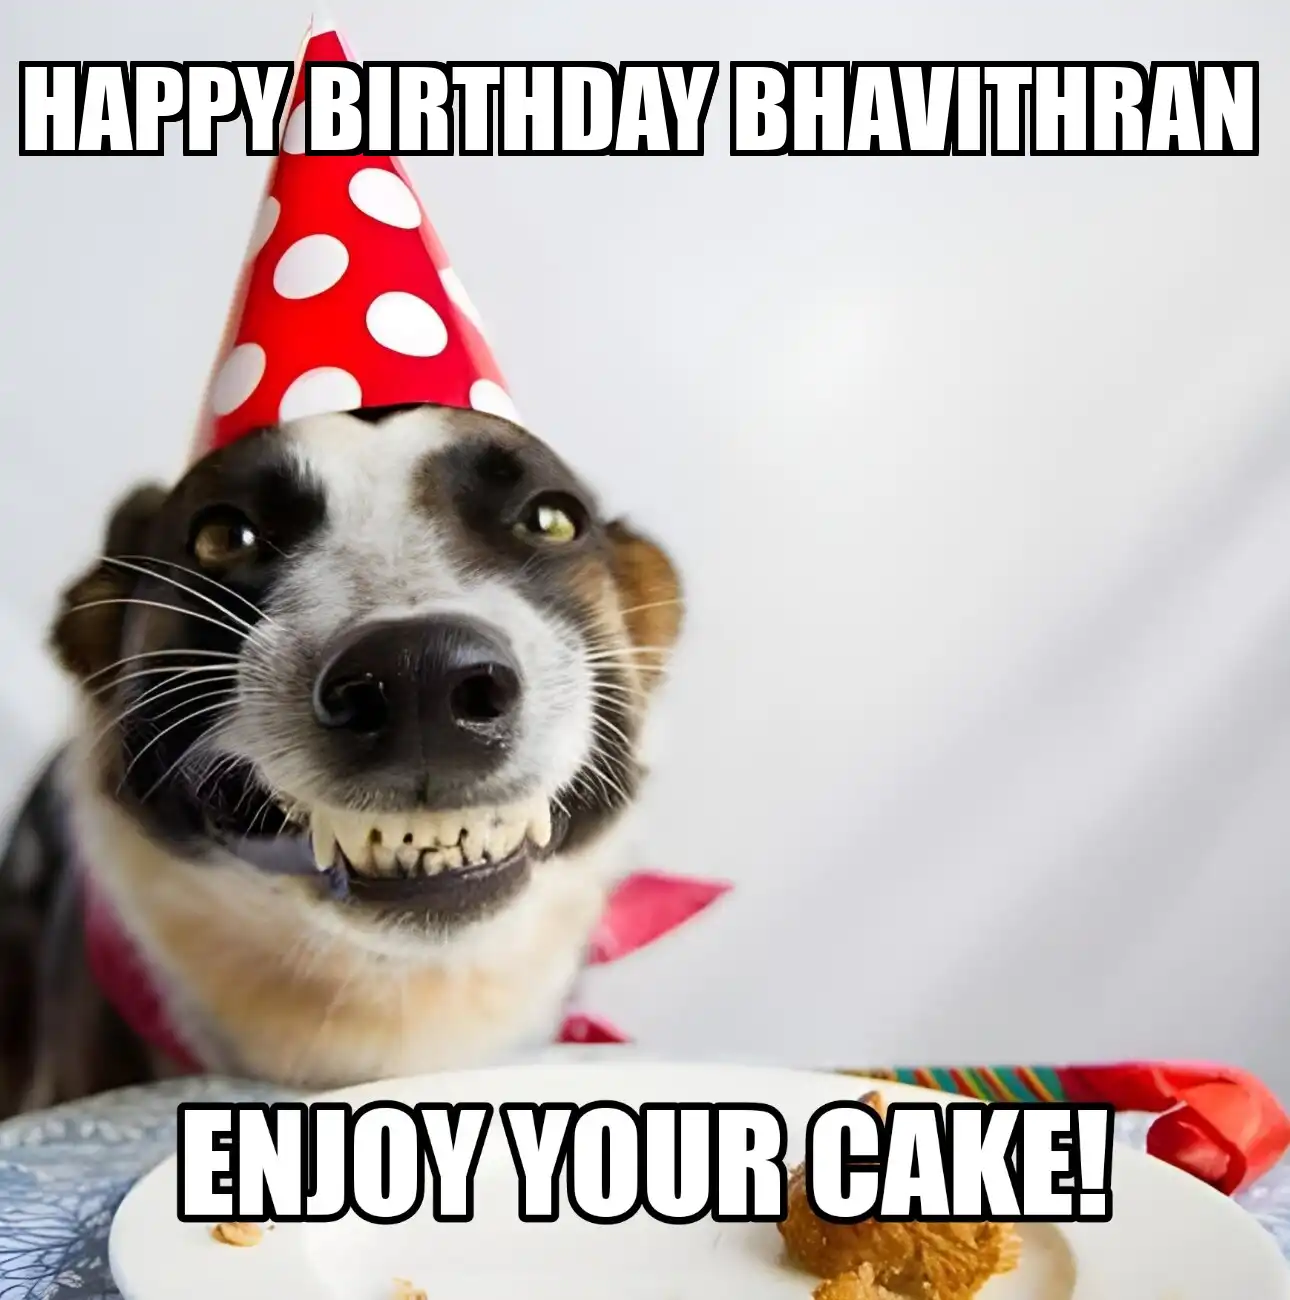 Happy Birthday Bhavithran Enjoy Your Cake Dog Meme